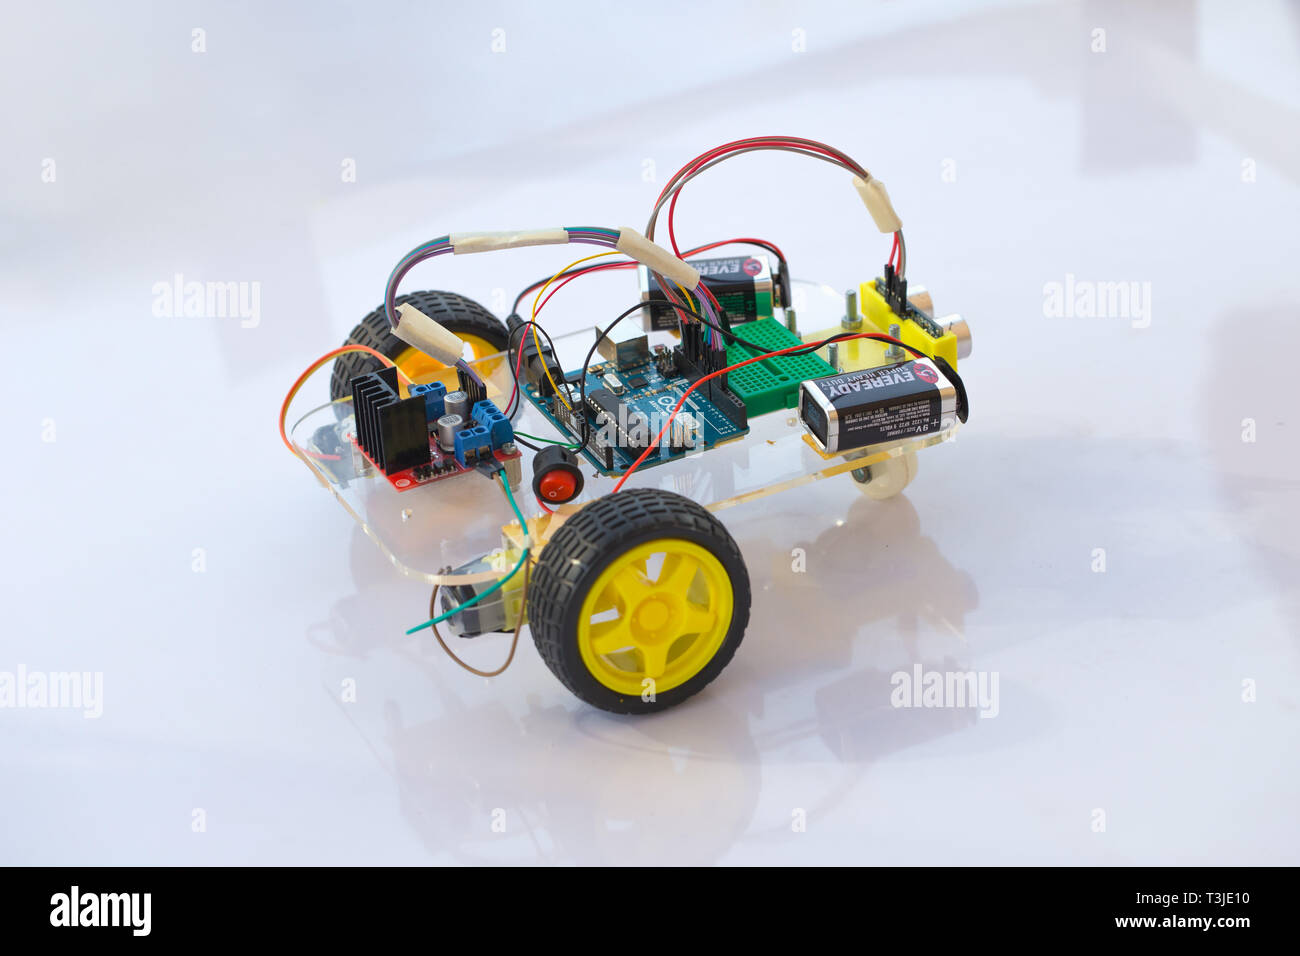 Electornic car kit robot modulo realizzato da micro-controller open source hardware del circuito per il bambino futuro istruzione.20 gennaio 2018, Bangkok, Thailandia. Foto Stock